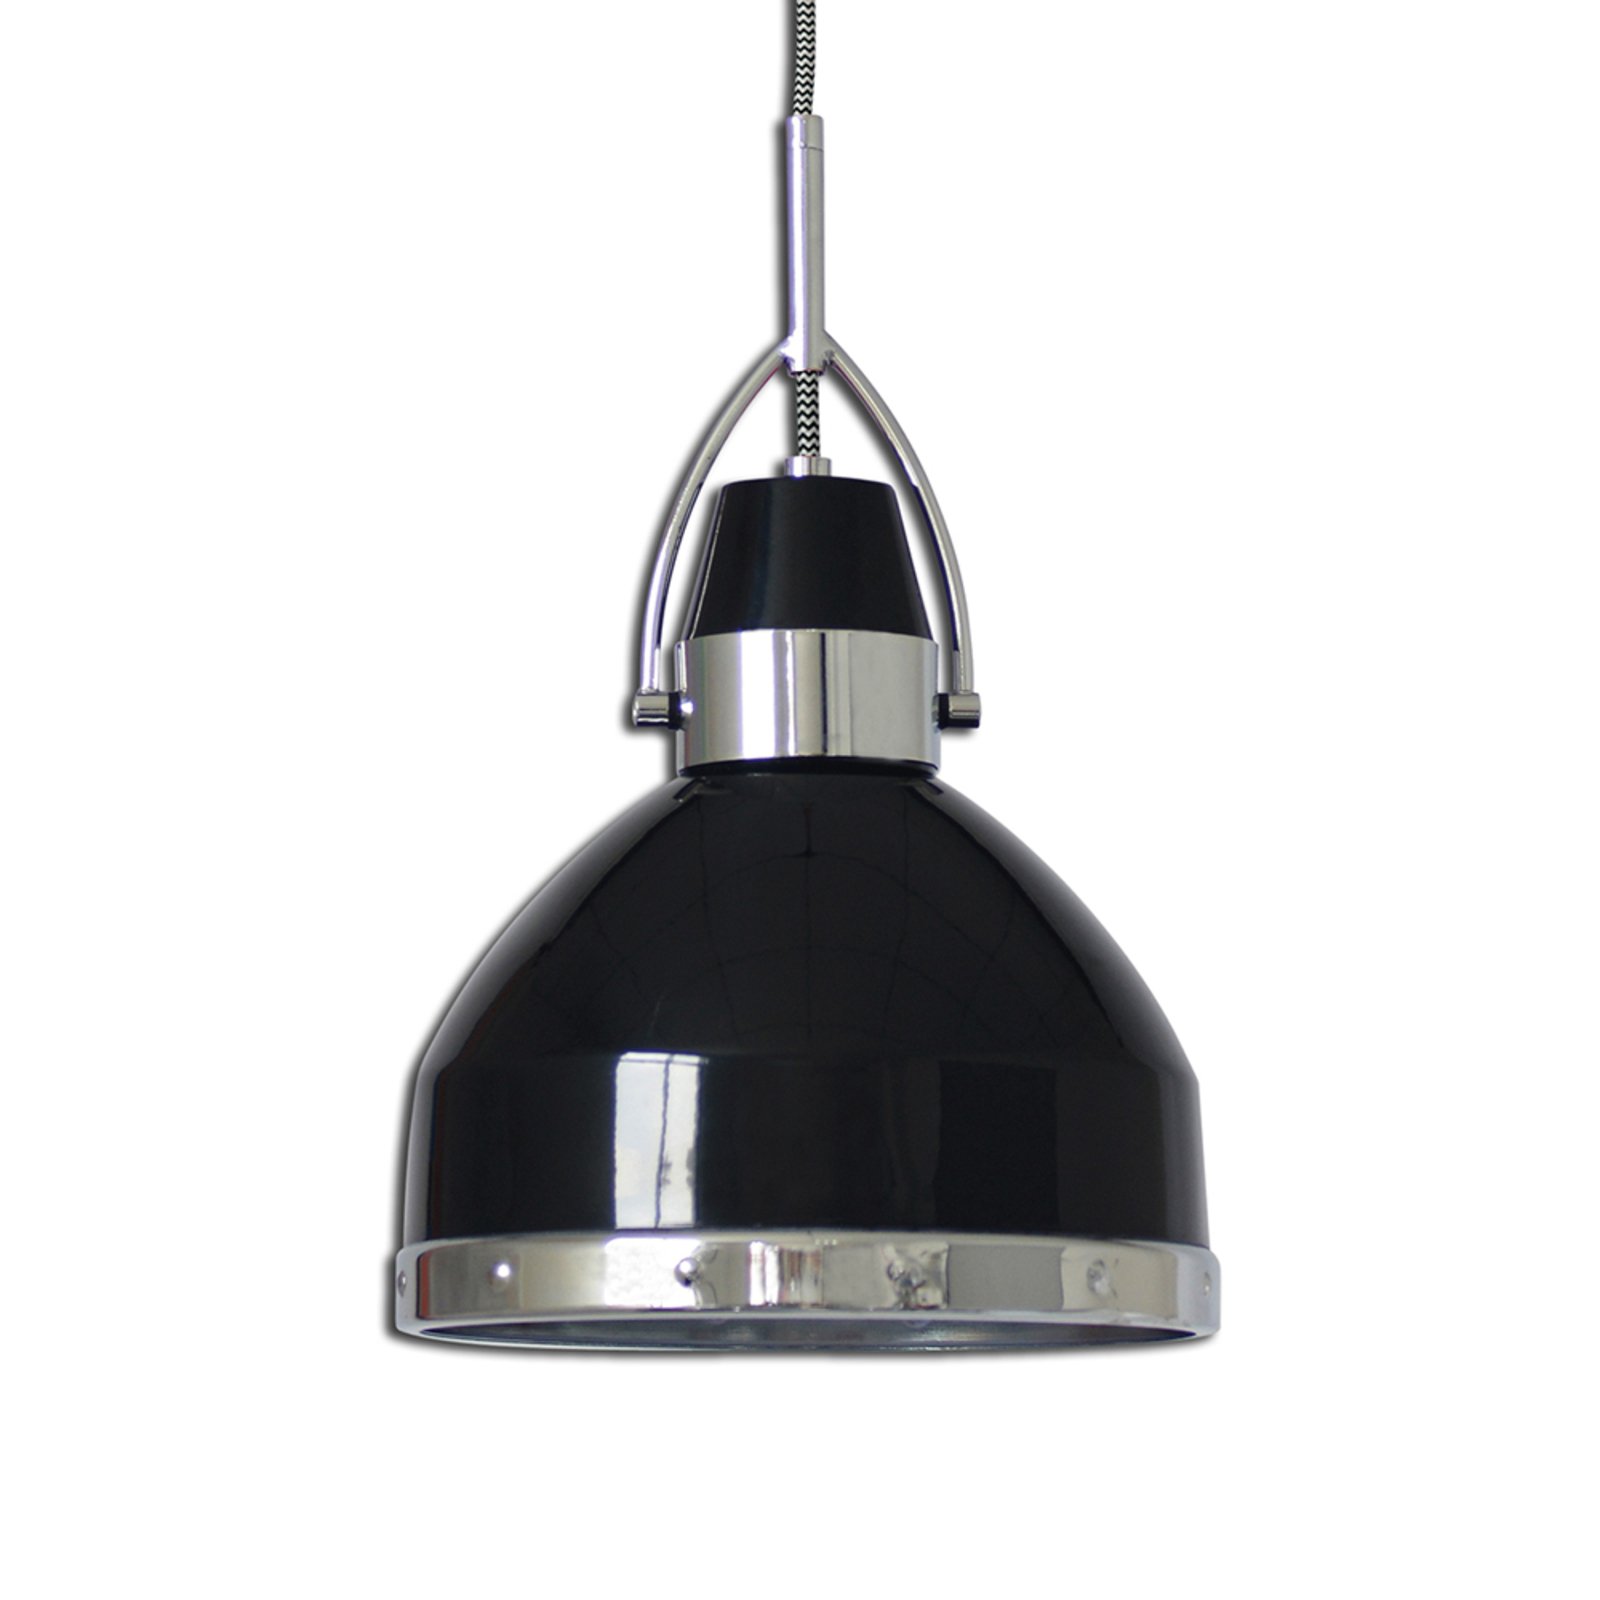 Industrijski dizajnirana viseća lampa Britta, crna